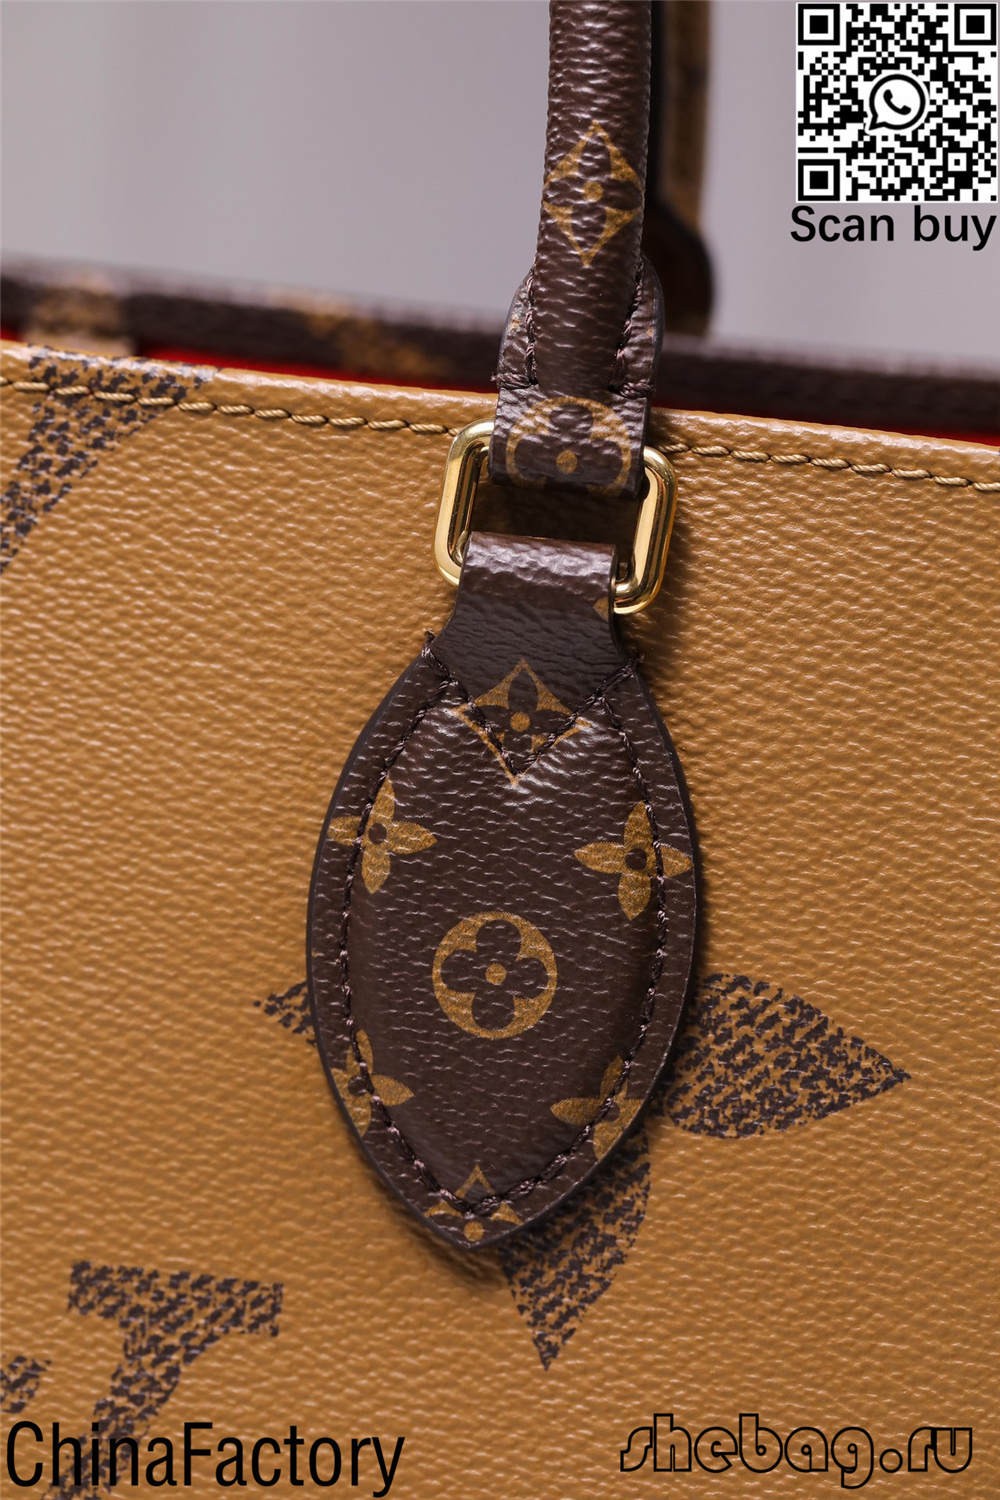 Popisy a ceny repliky tašky louis Vitton (aktualizované v roku 2022) - Najkvalitnejší internetový obchod falošnej tašky Louis Vuitton, replika značkovej tašky ru